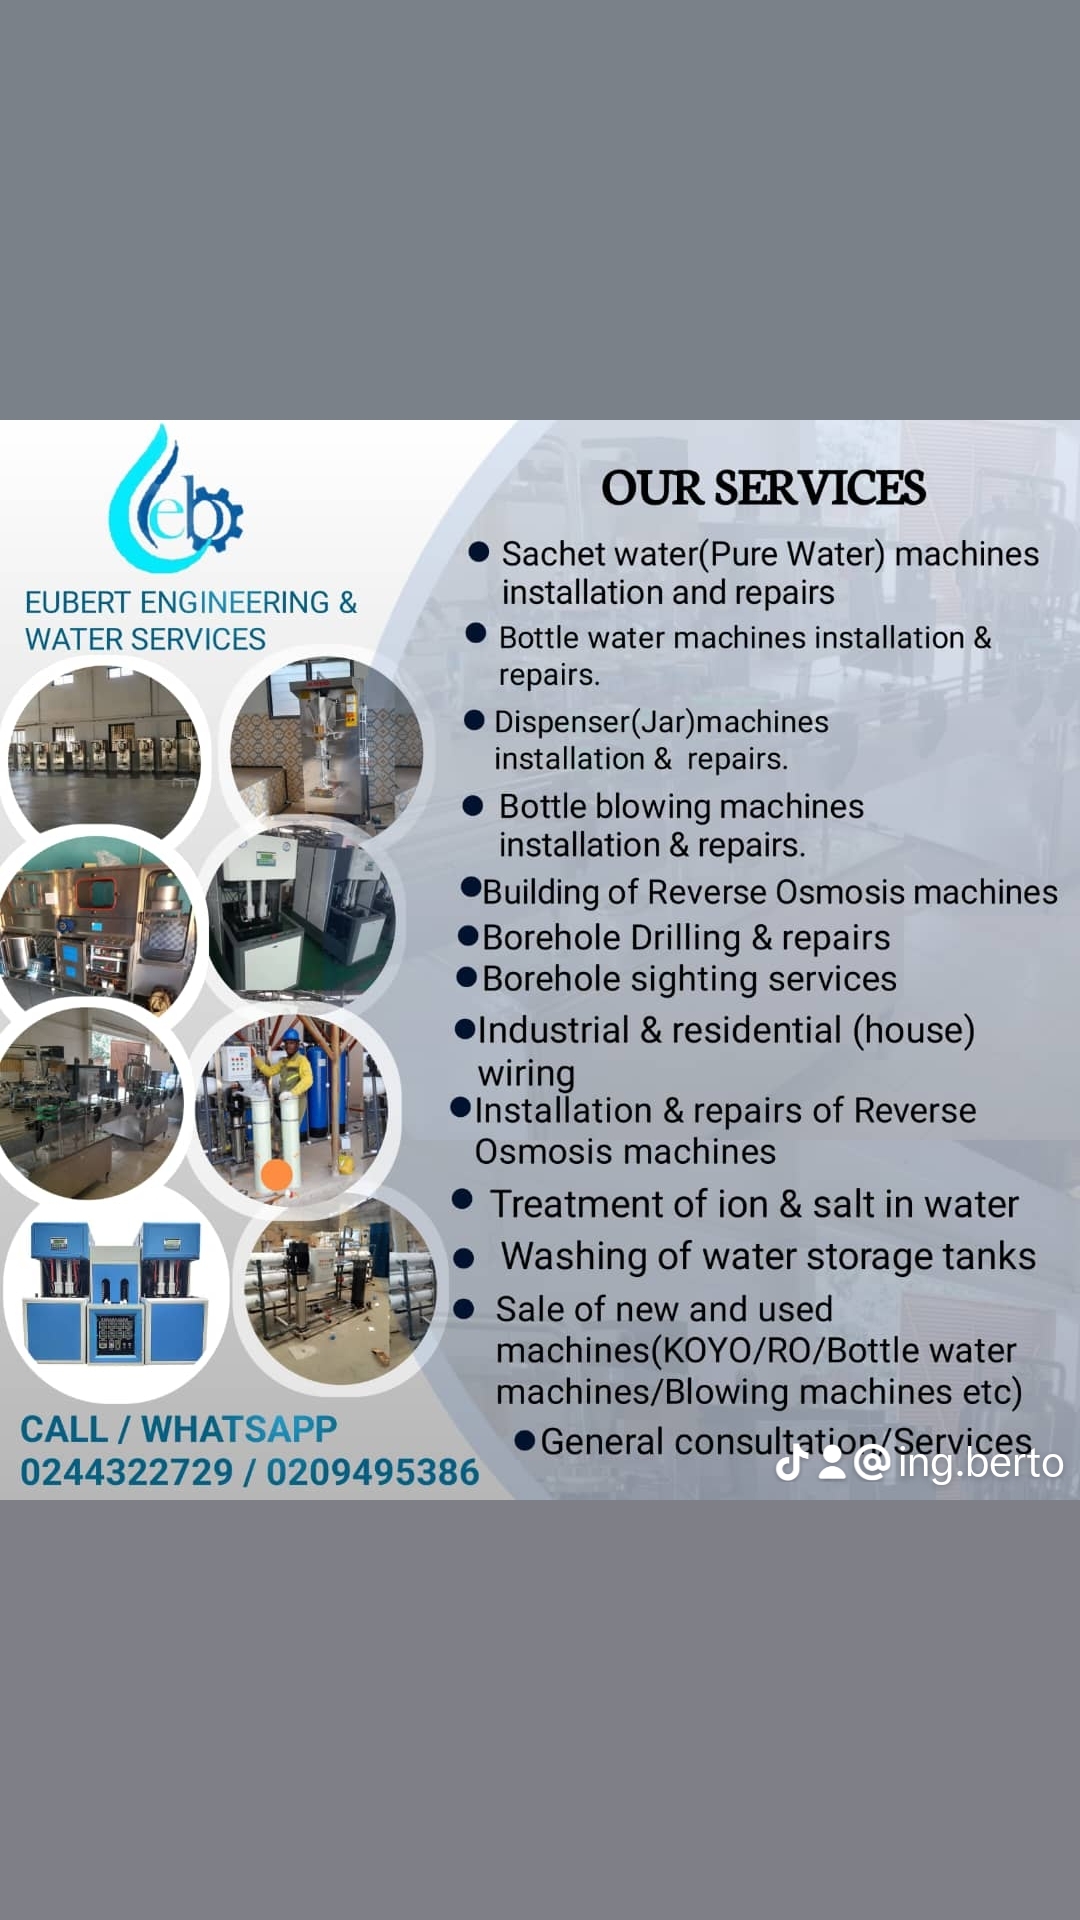 EUBERT ENGINEERING & WATER SERVICES